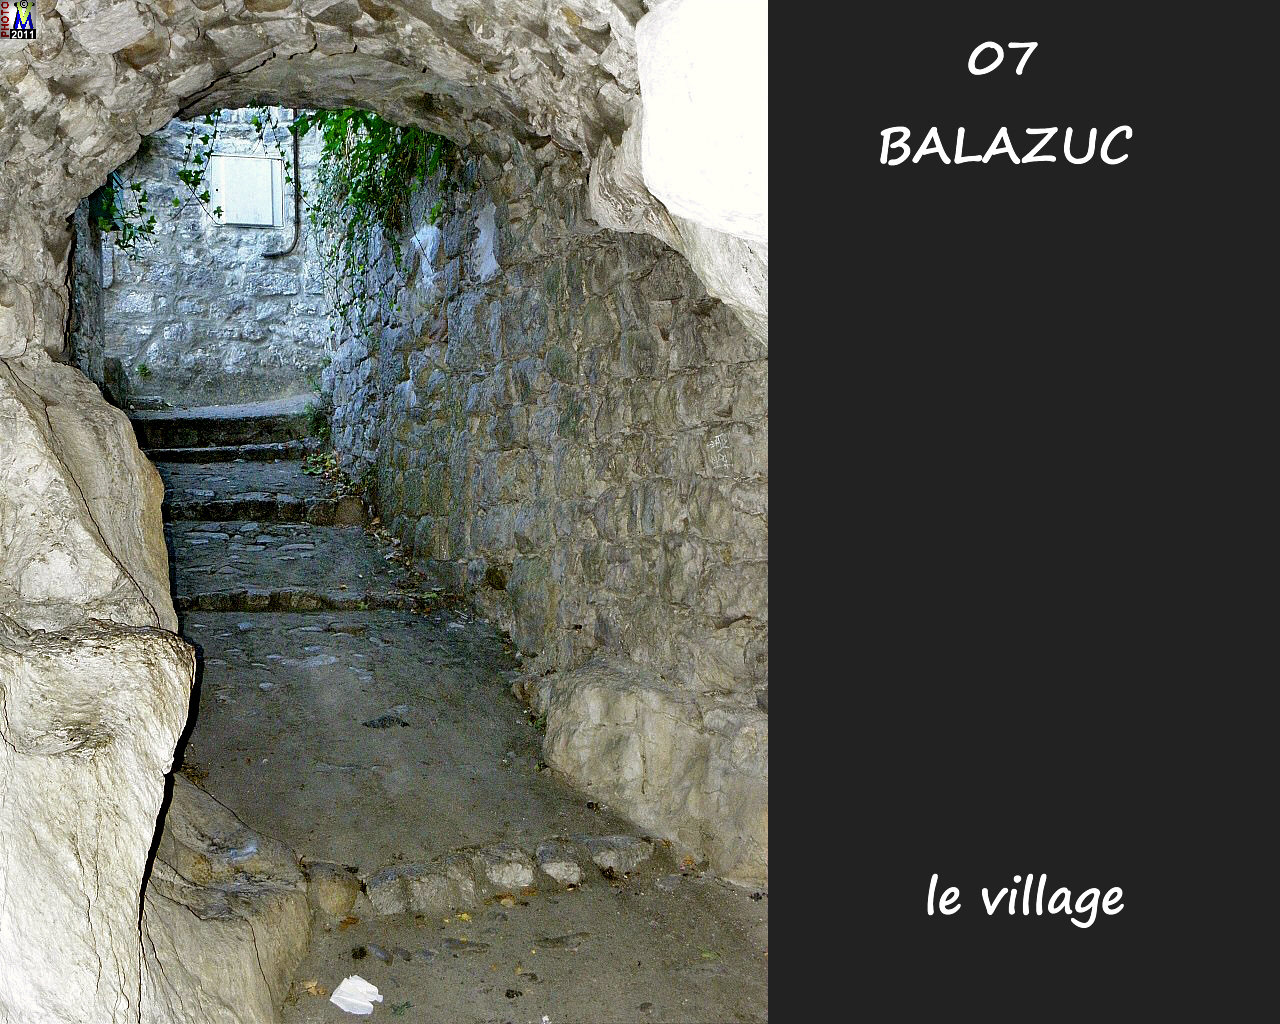 07BALAZUC_village_190.jpg